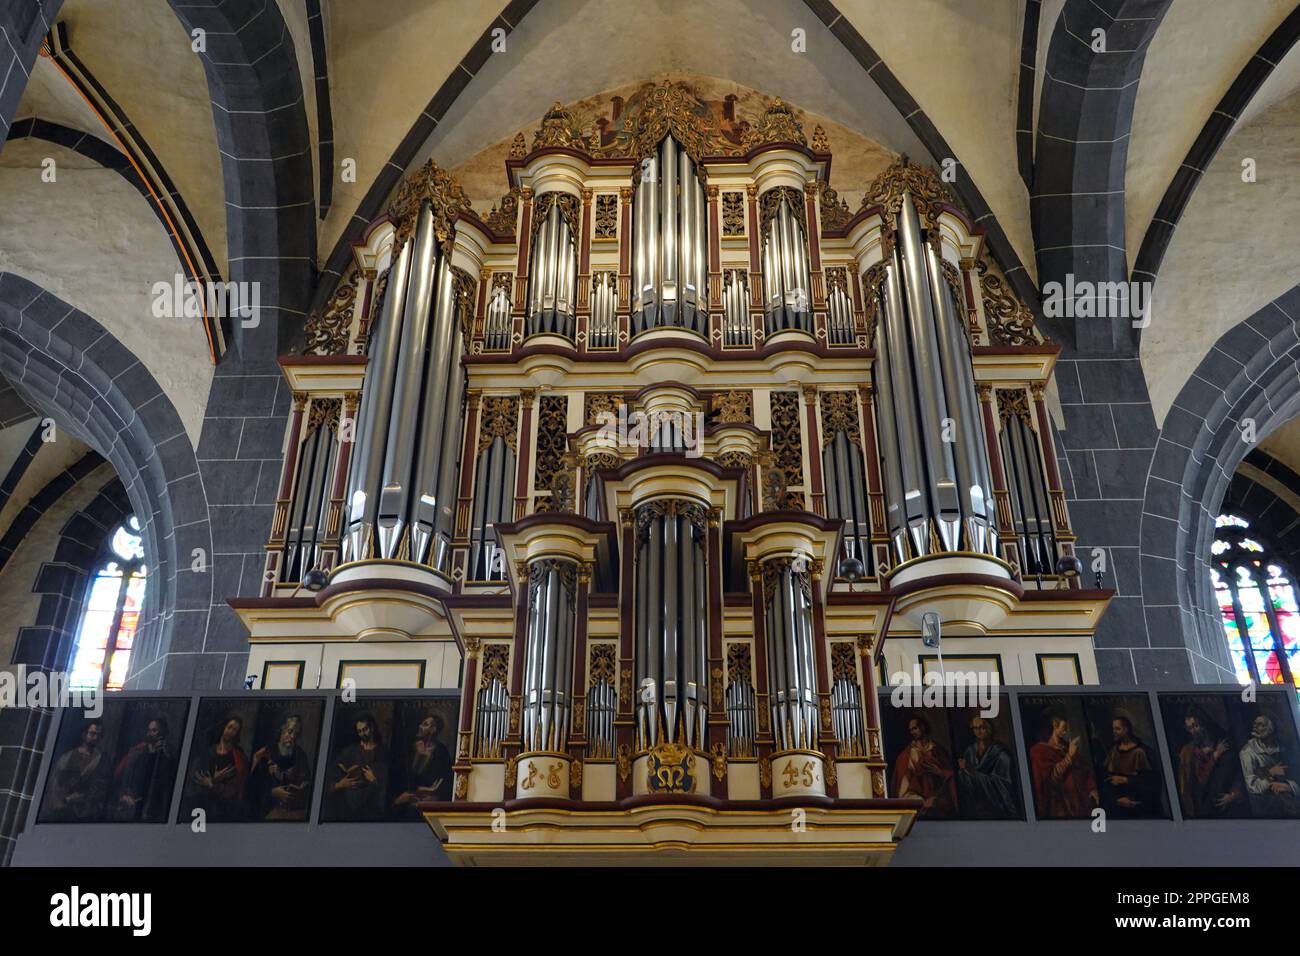 Innenansicht der evangelischen St. Blasius Kirche - Orgelprospekt, Niedersachsen, Deutschland, Hannoversch MÃ¼nden Stock Photo